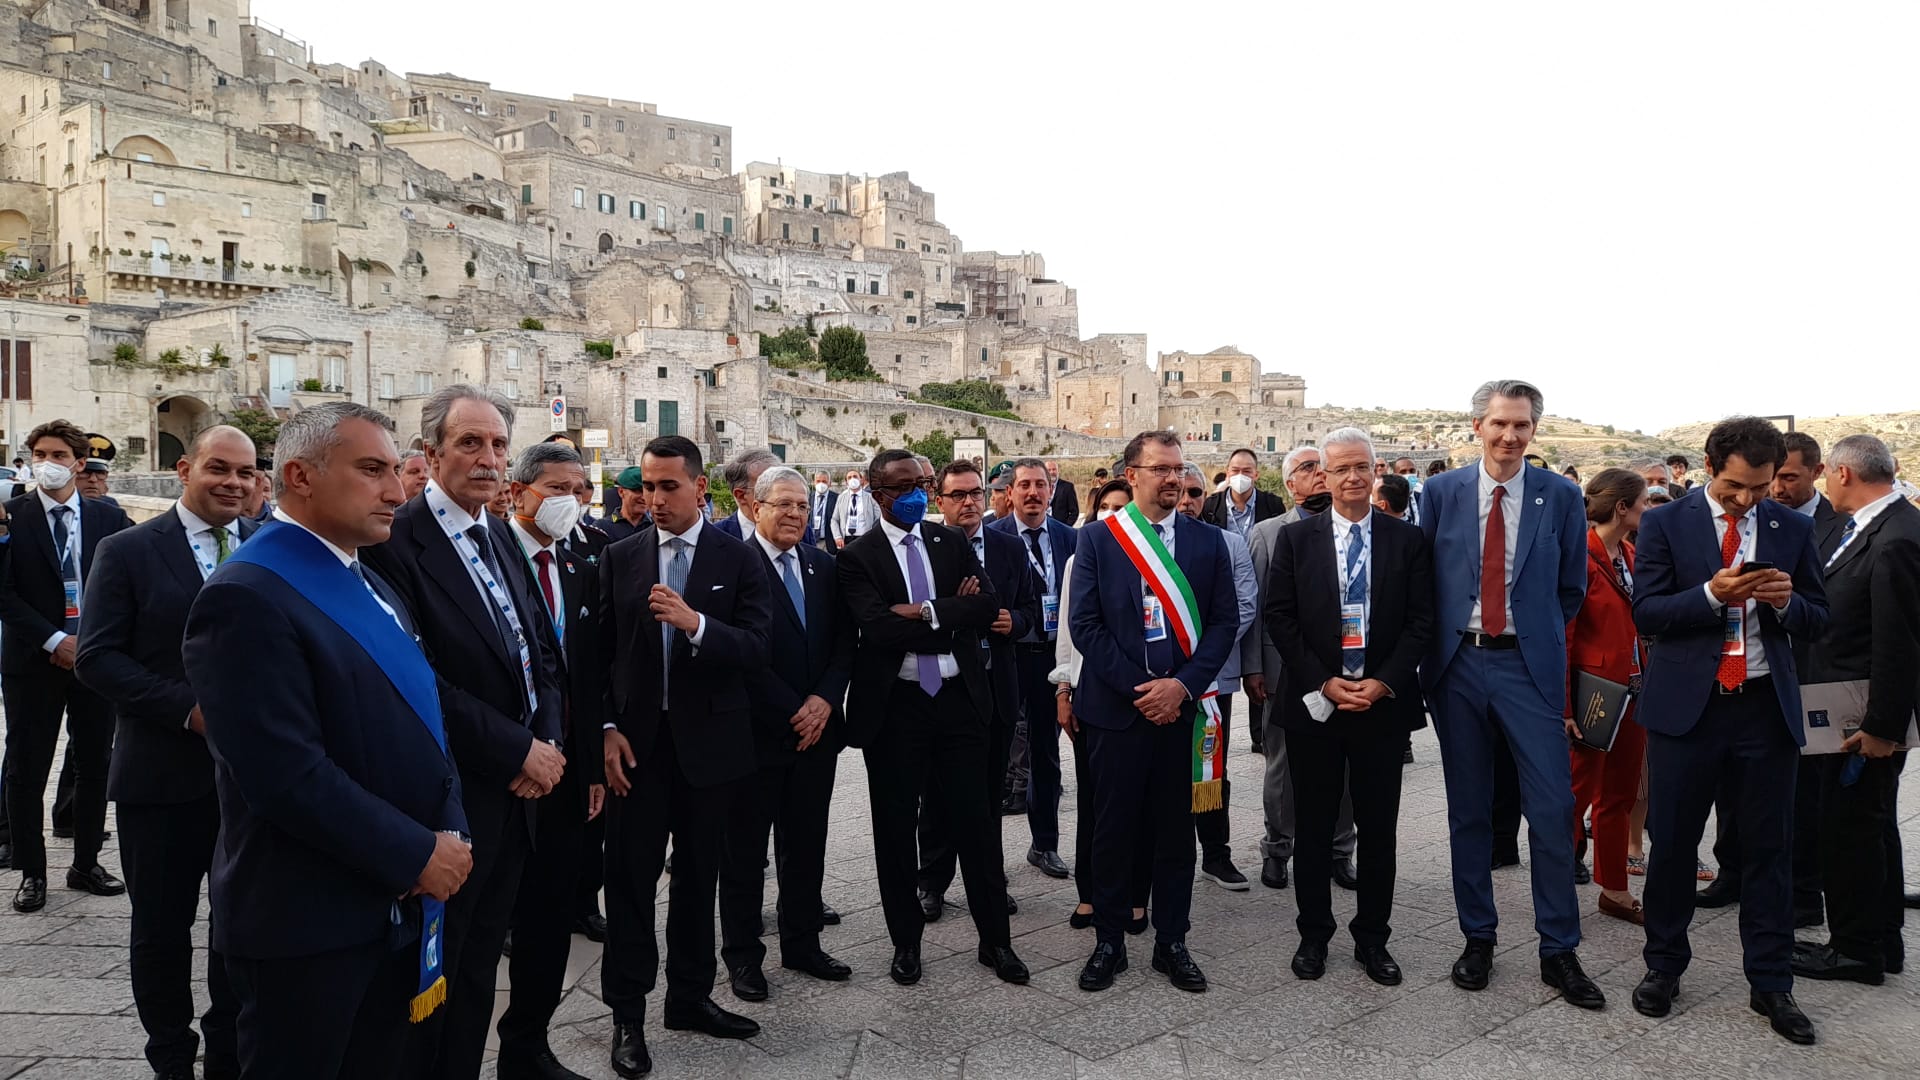 La Basilicata saluta i grandi del Mondo riuniti a Matera per il G20